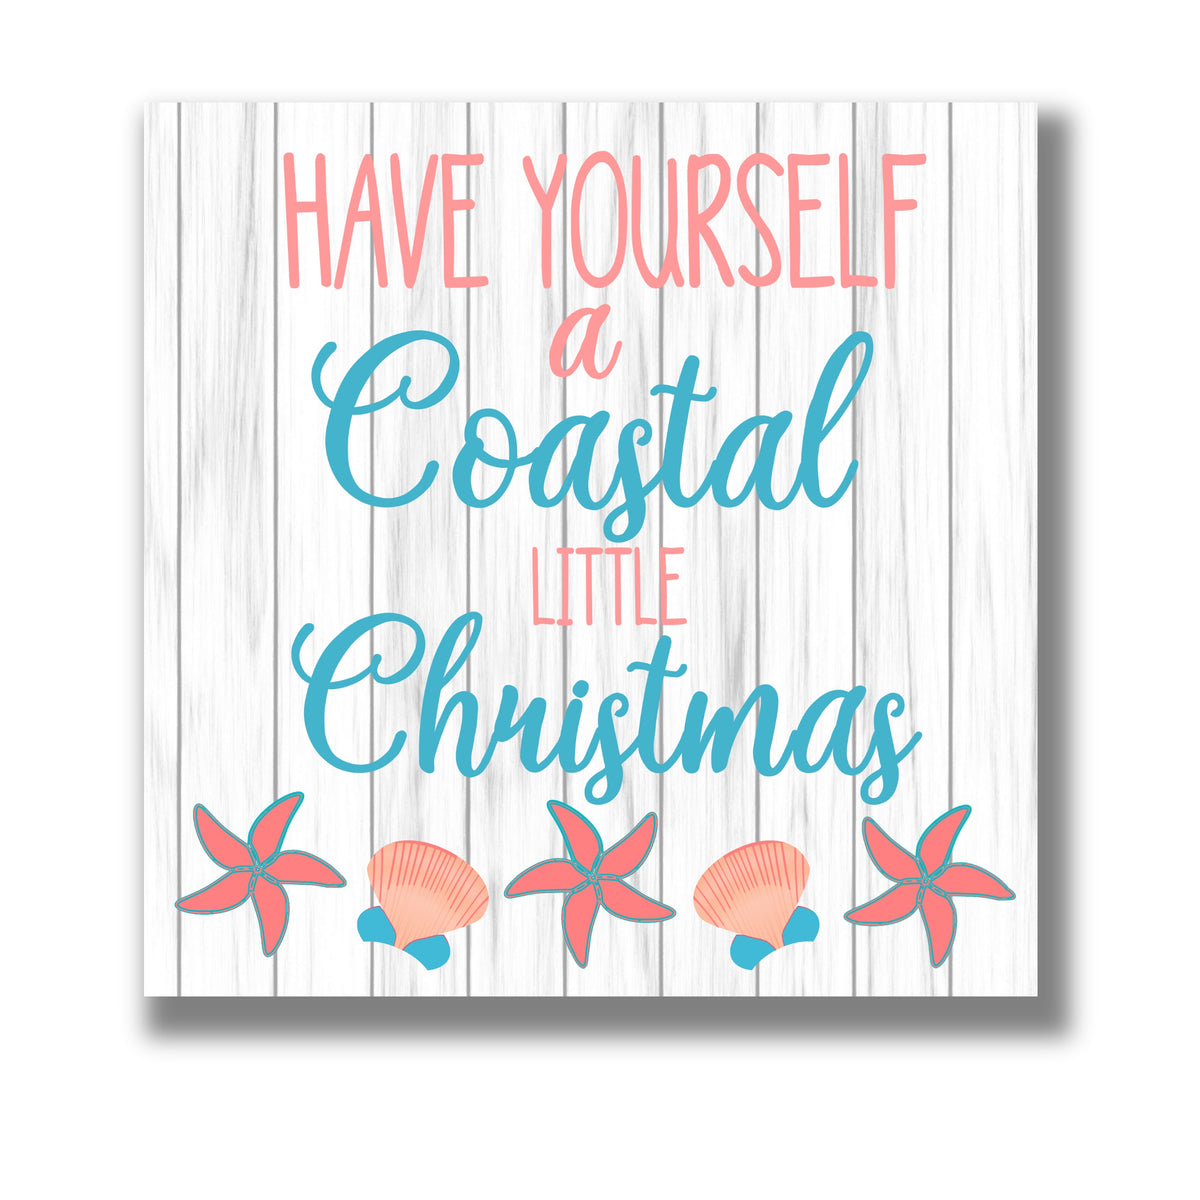 Have Yourself a Coastal Little Christmas 12x12 Beach Themed Canvas